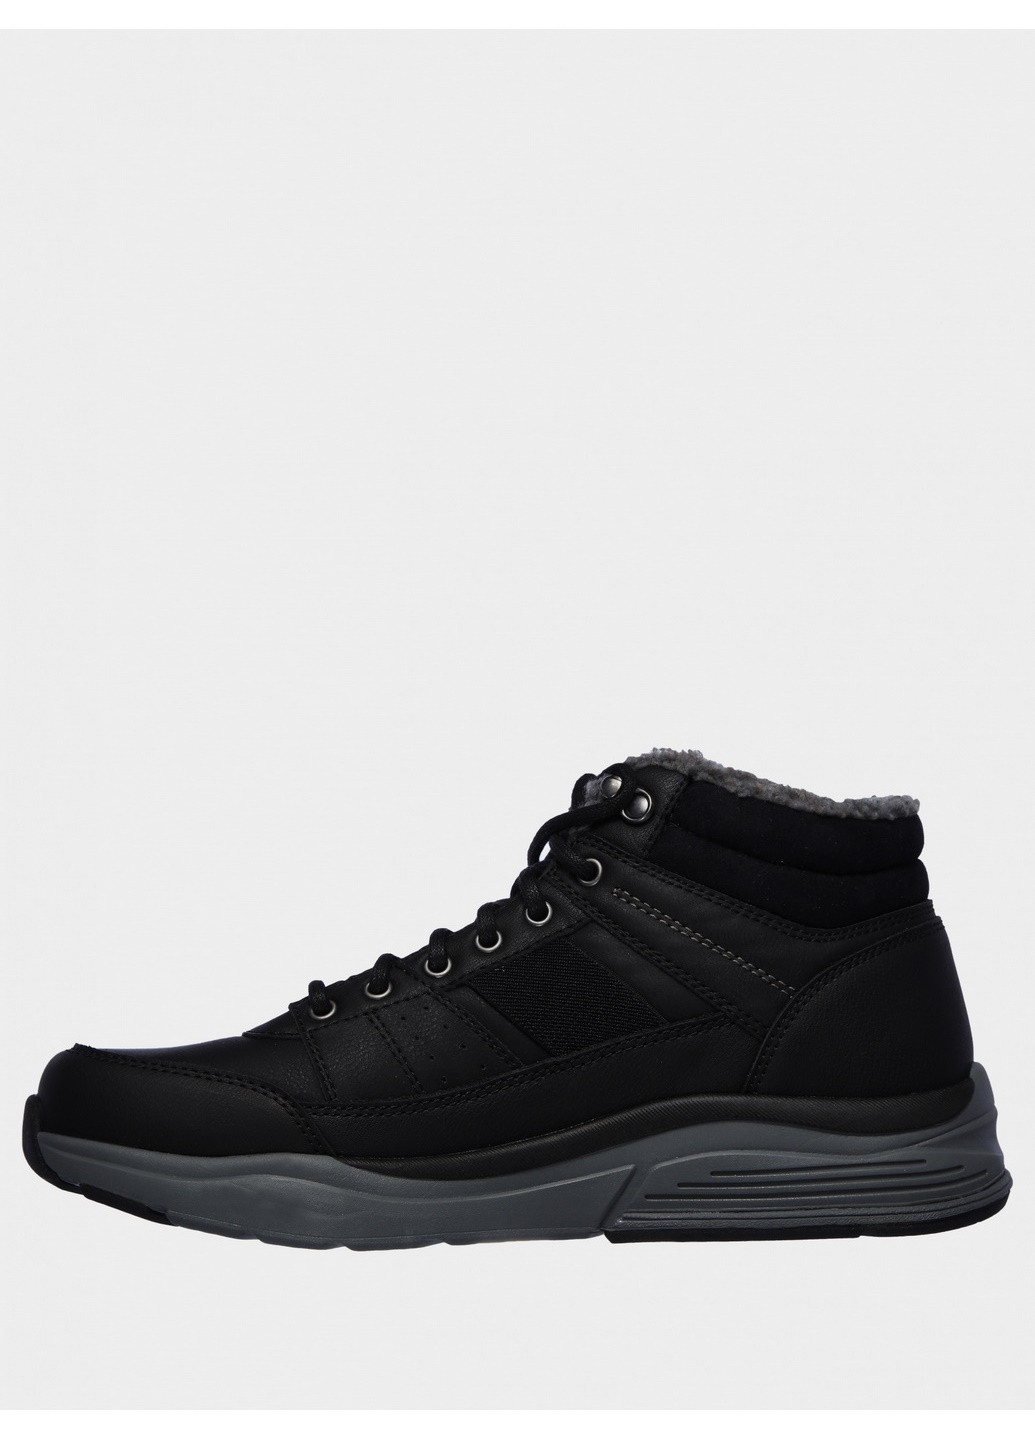 Черные осенние ботинки мужские 66199blk Skechers